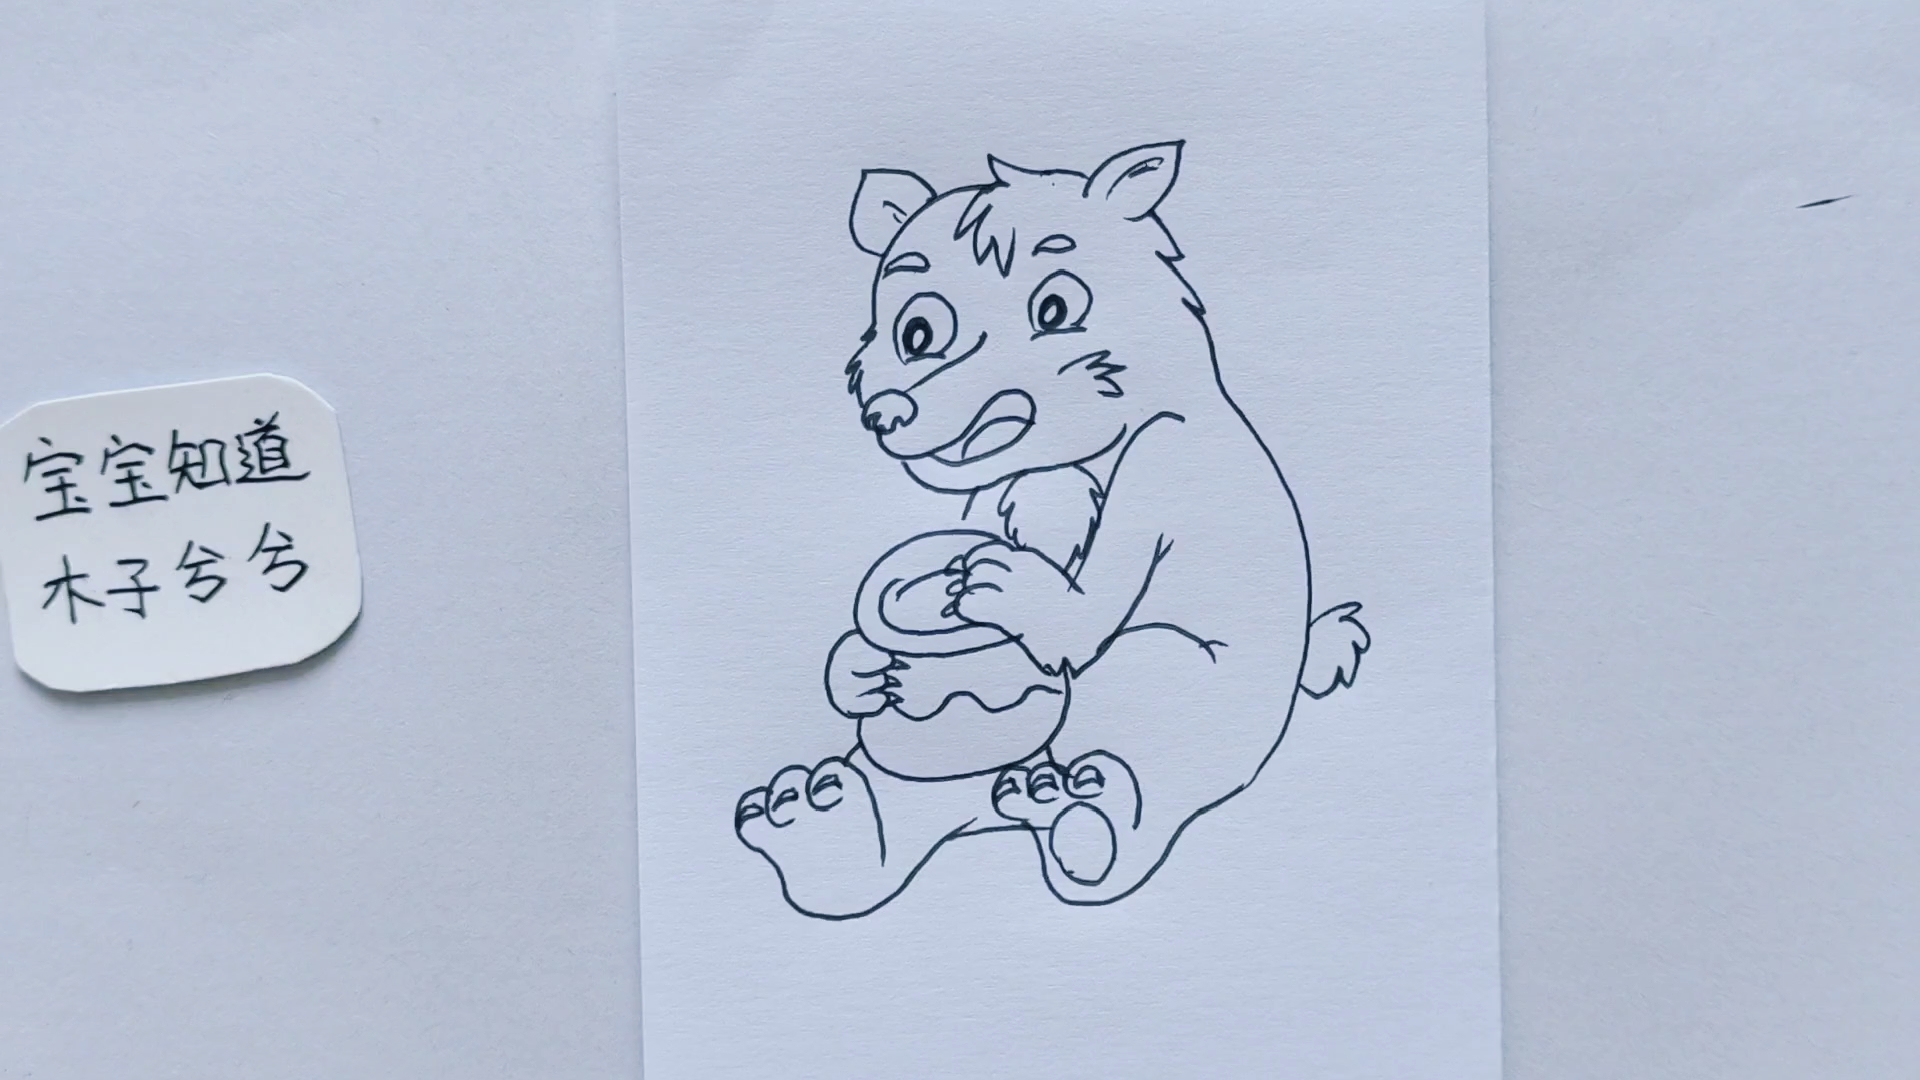 拿着蜜罐的小熊简笔画图片